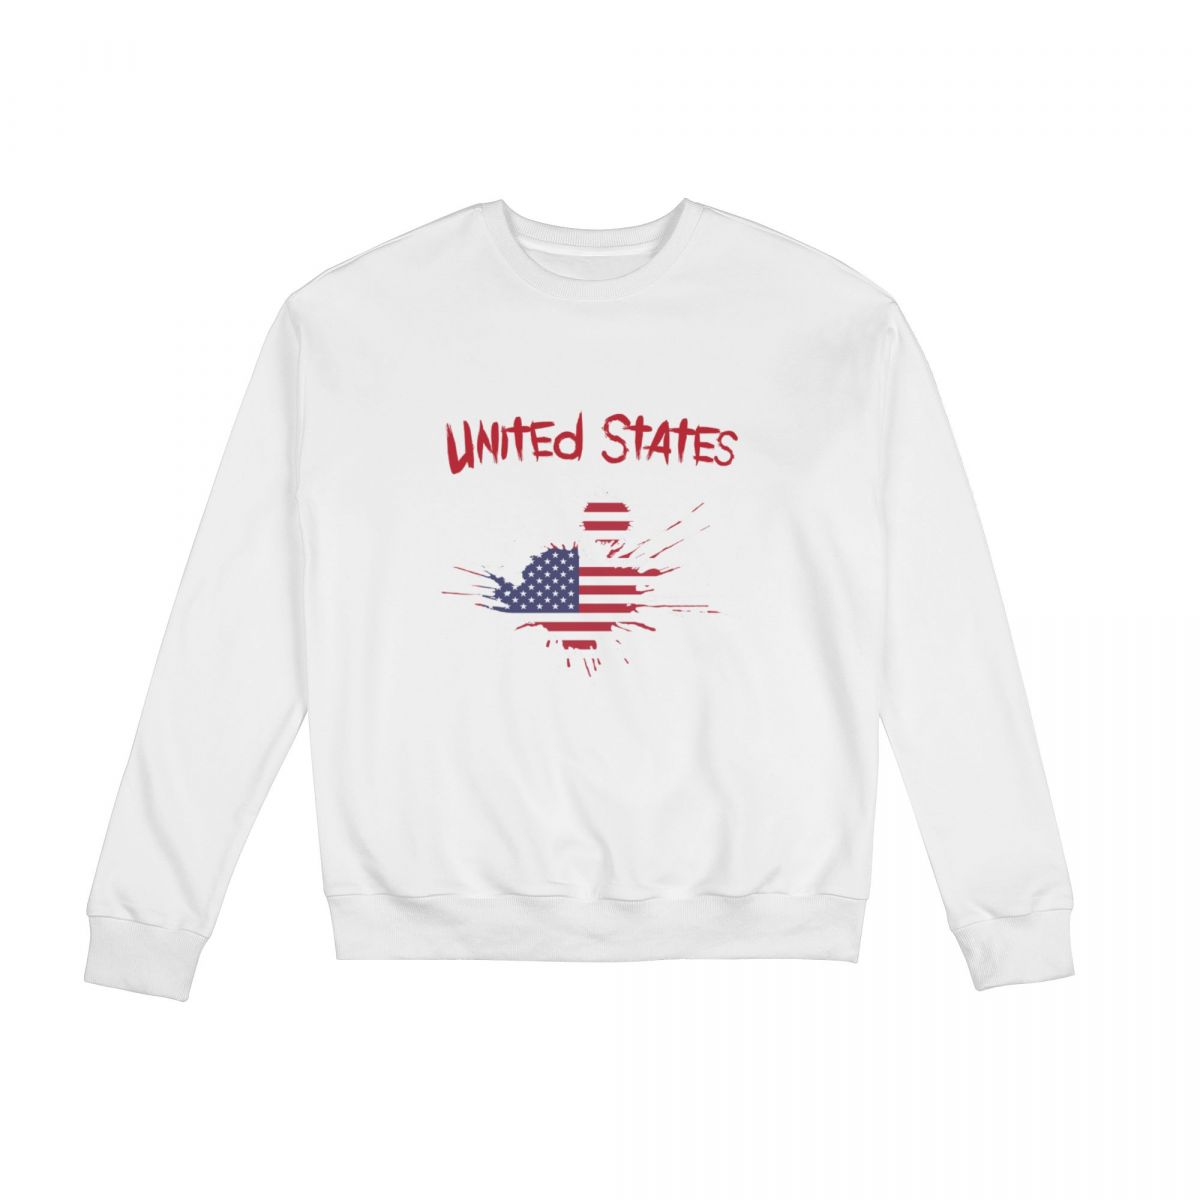 United States Ink Spatter Crew Neck Sweatshirt